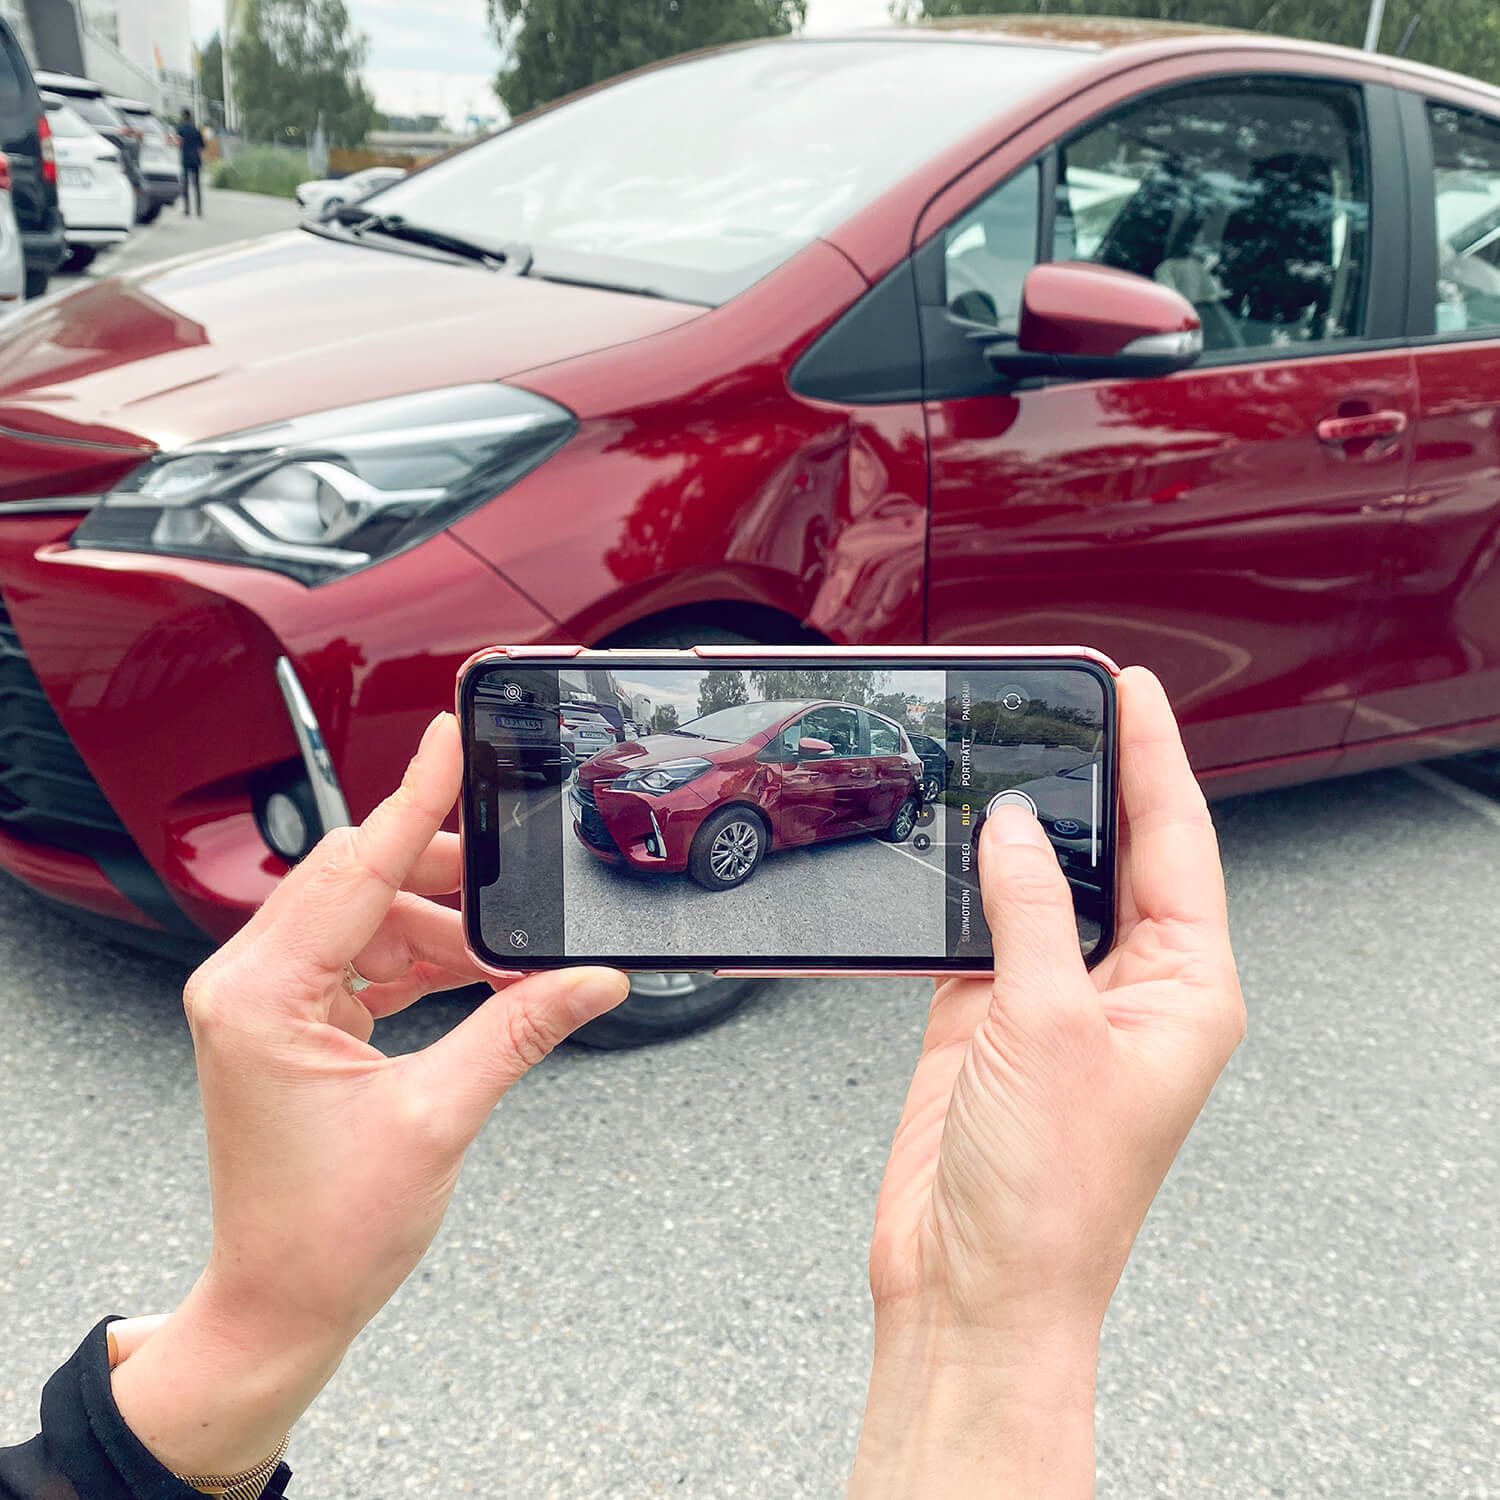 Fotografering med en mobiltelefon av en skadad Toyota